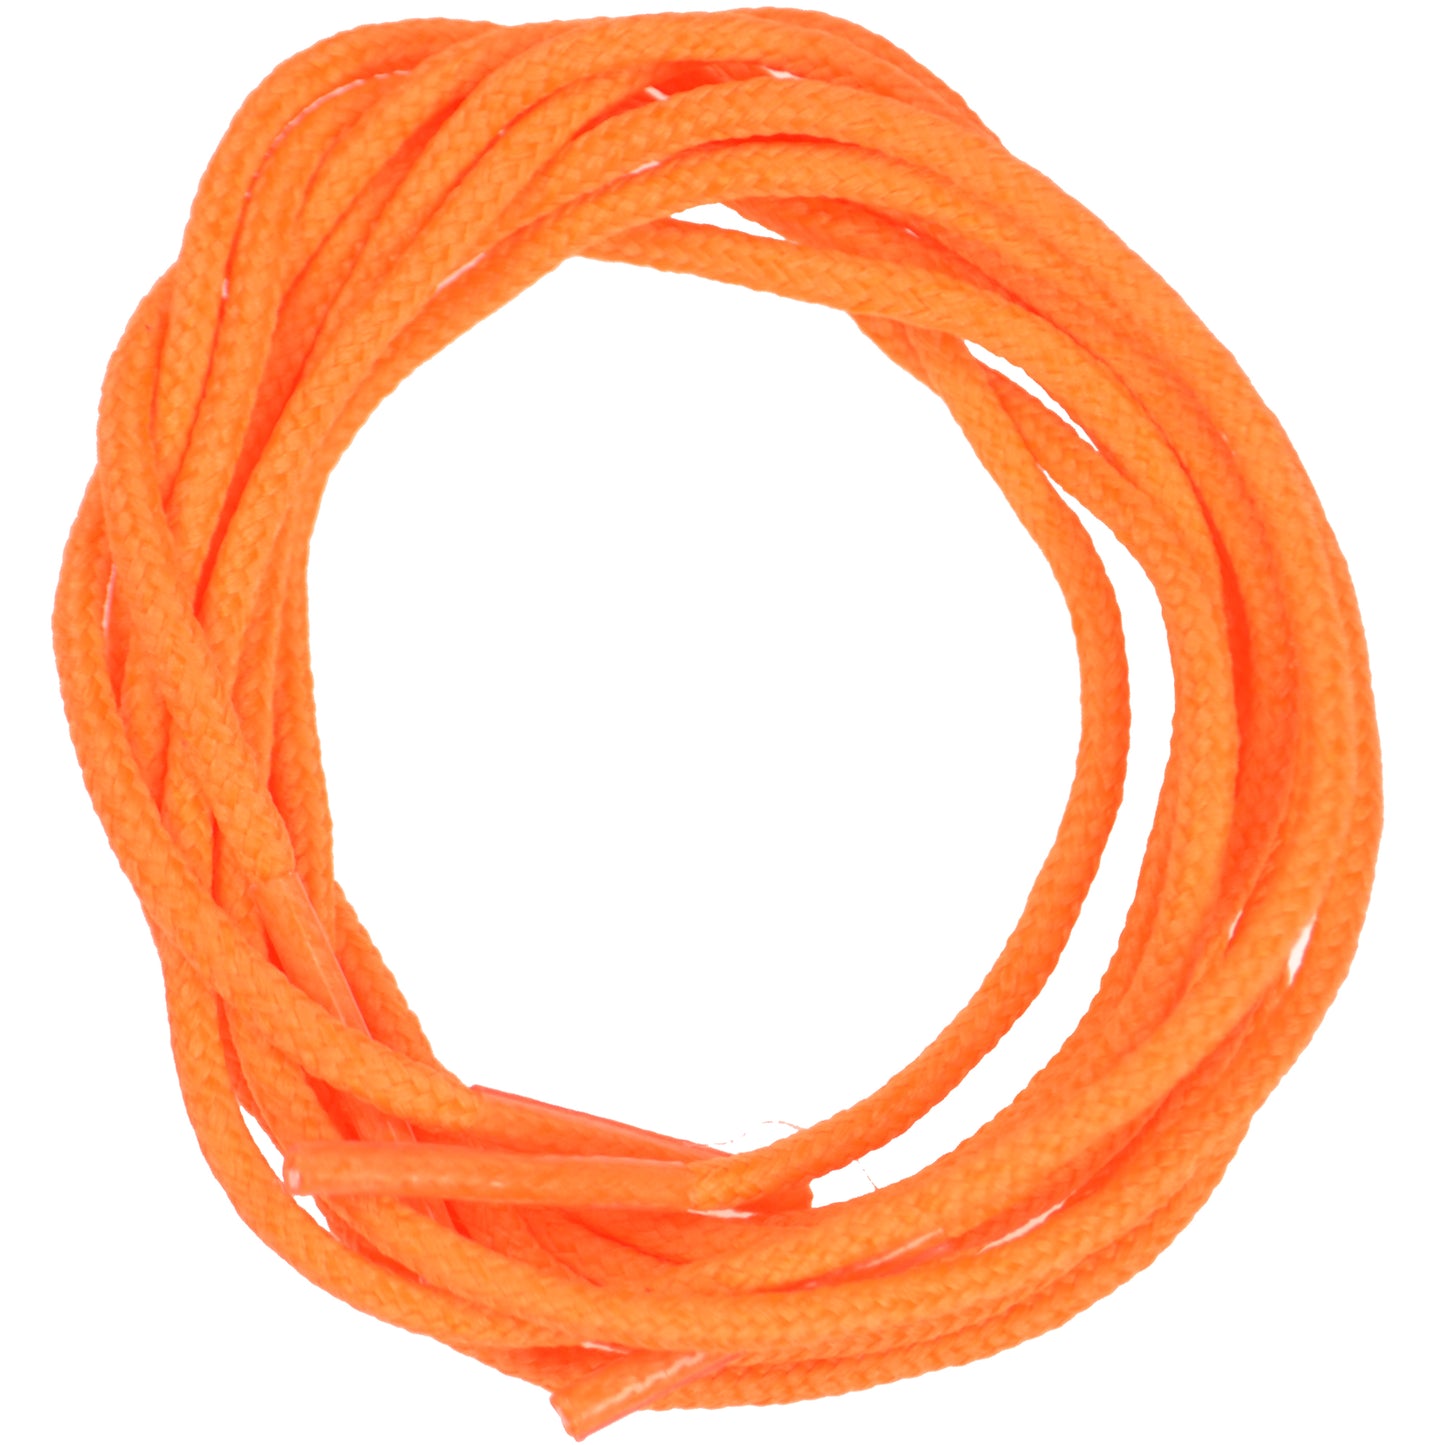 100cm Round Shoe Laces - Fluorescent Orange 3mm